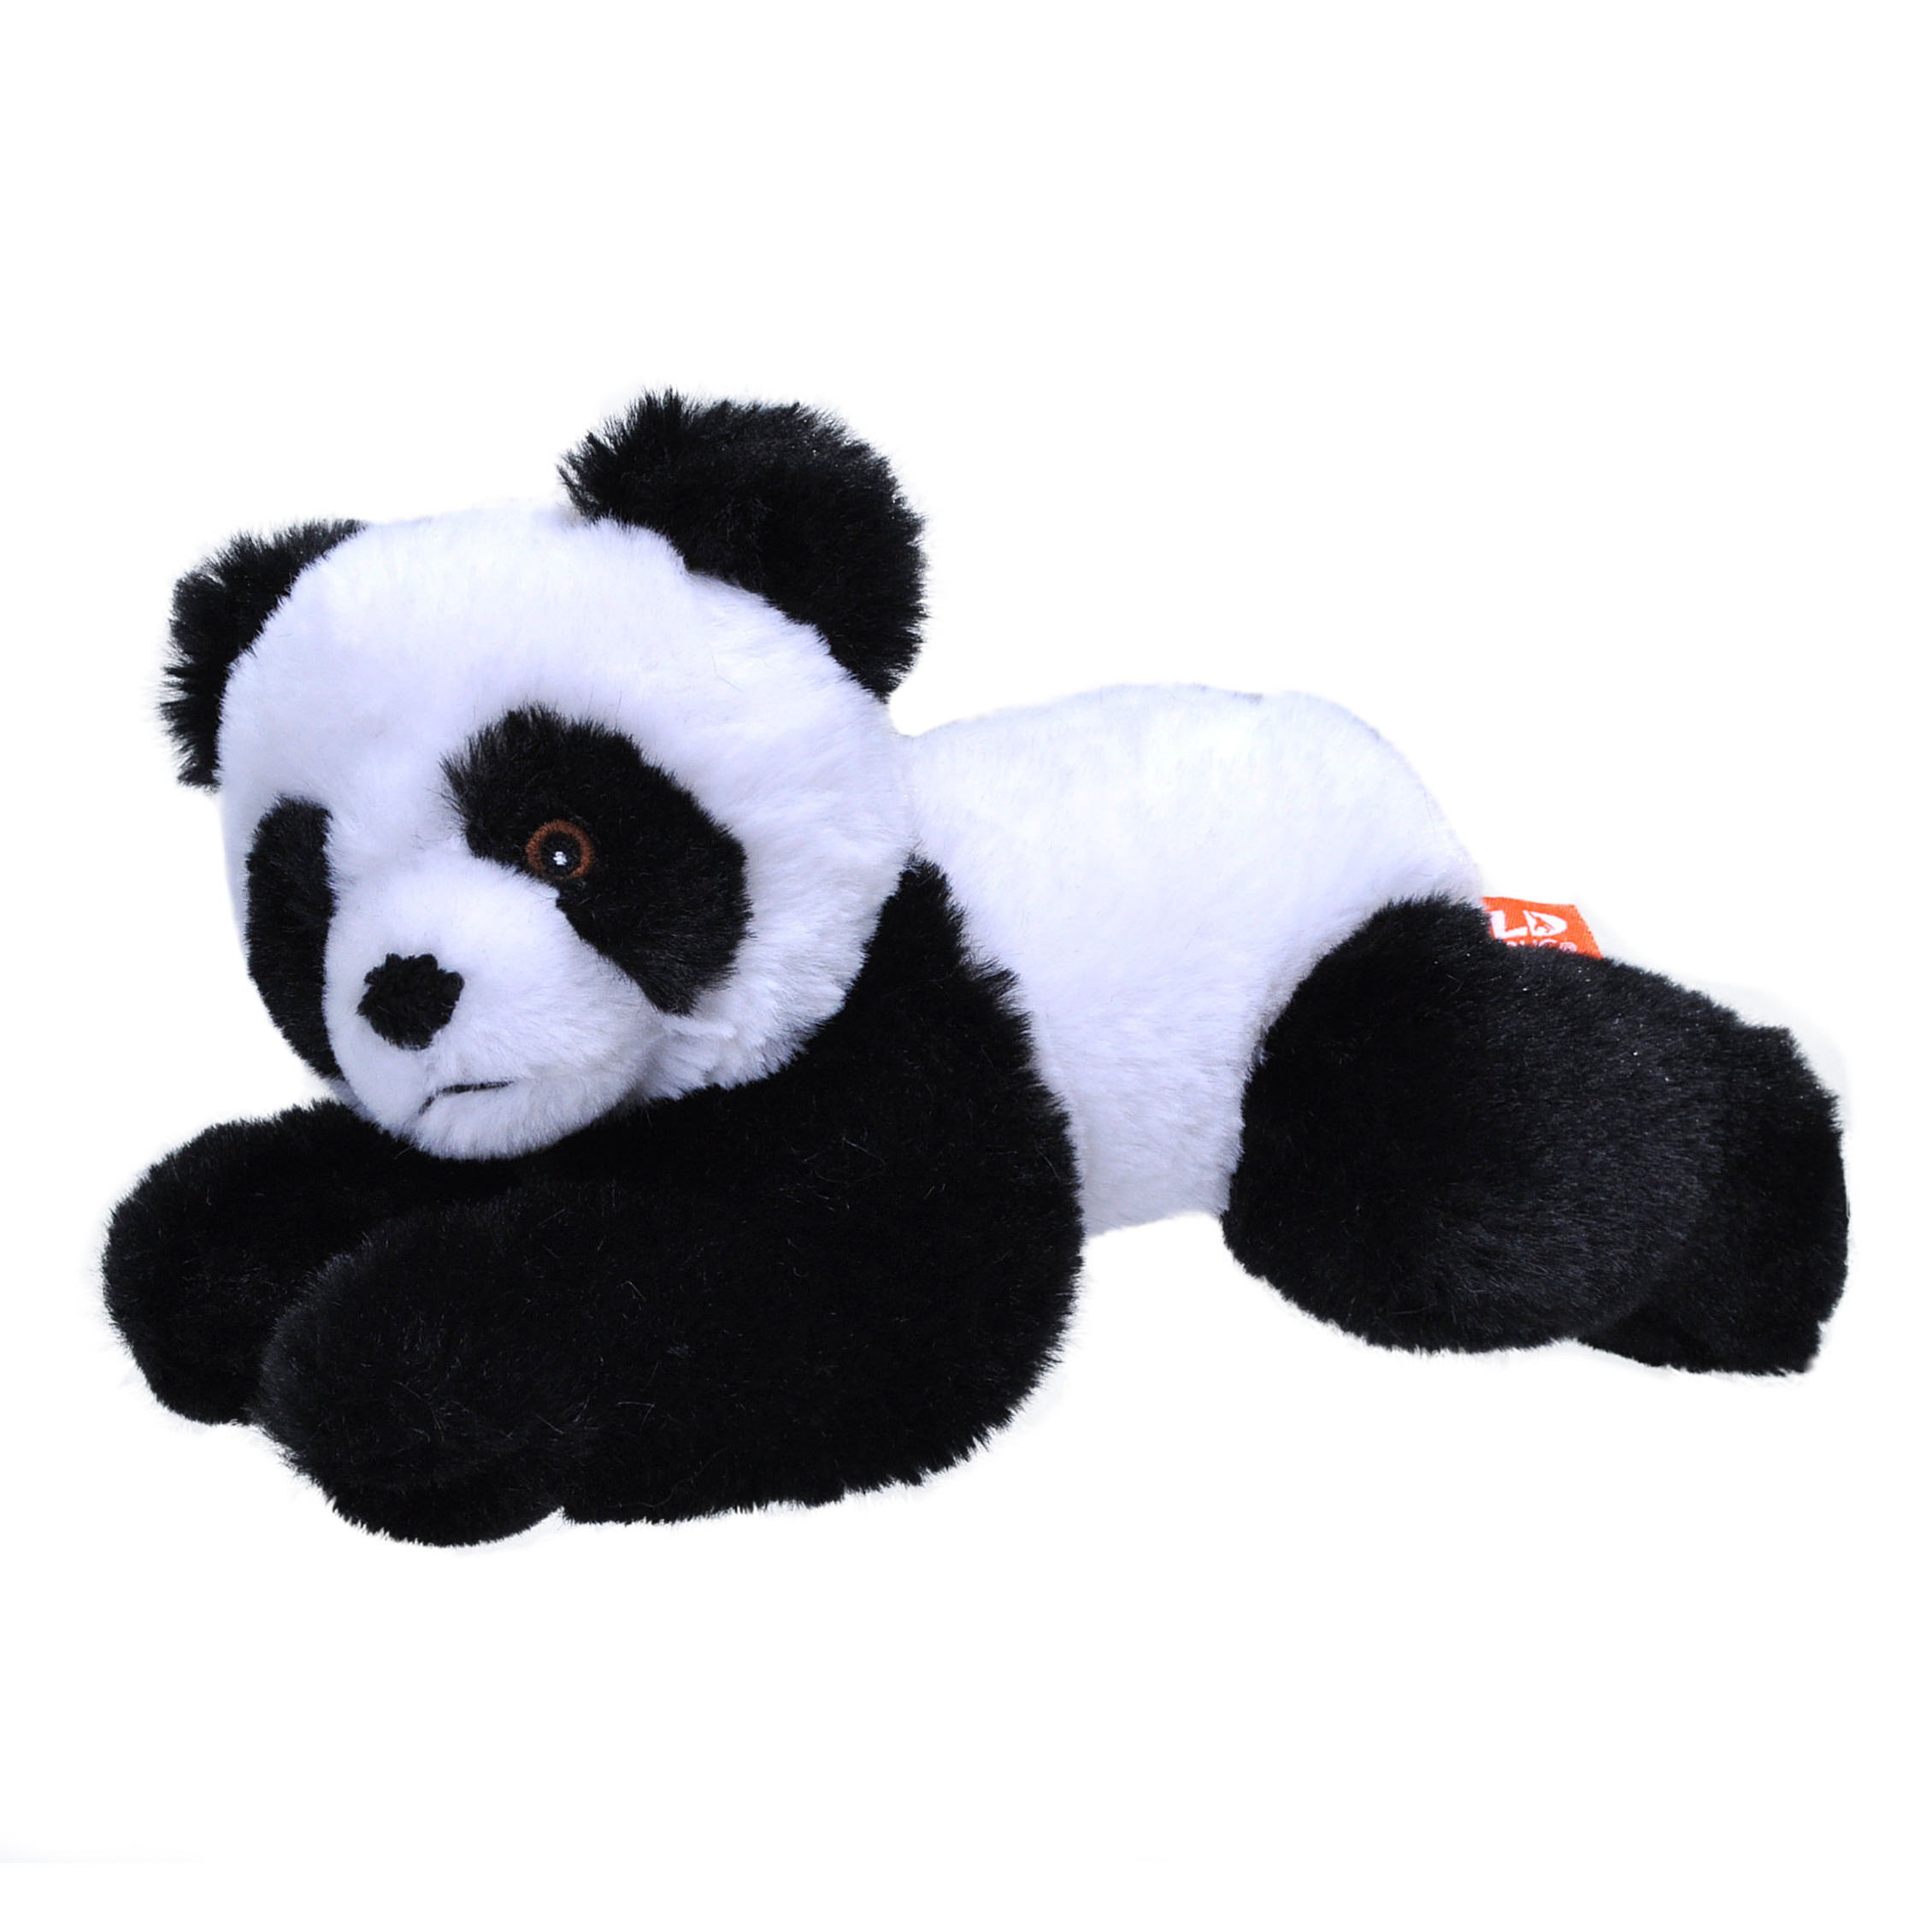 Wild Republic Pluche knuffel dieren Eco-kins panda beer van 24 cm -